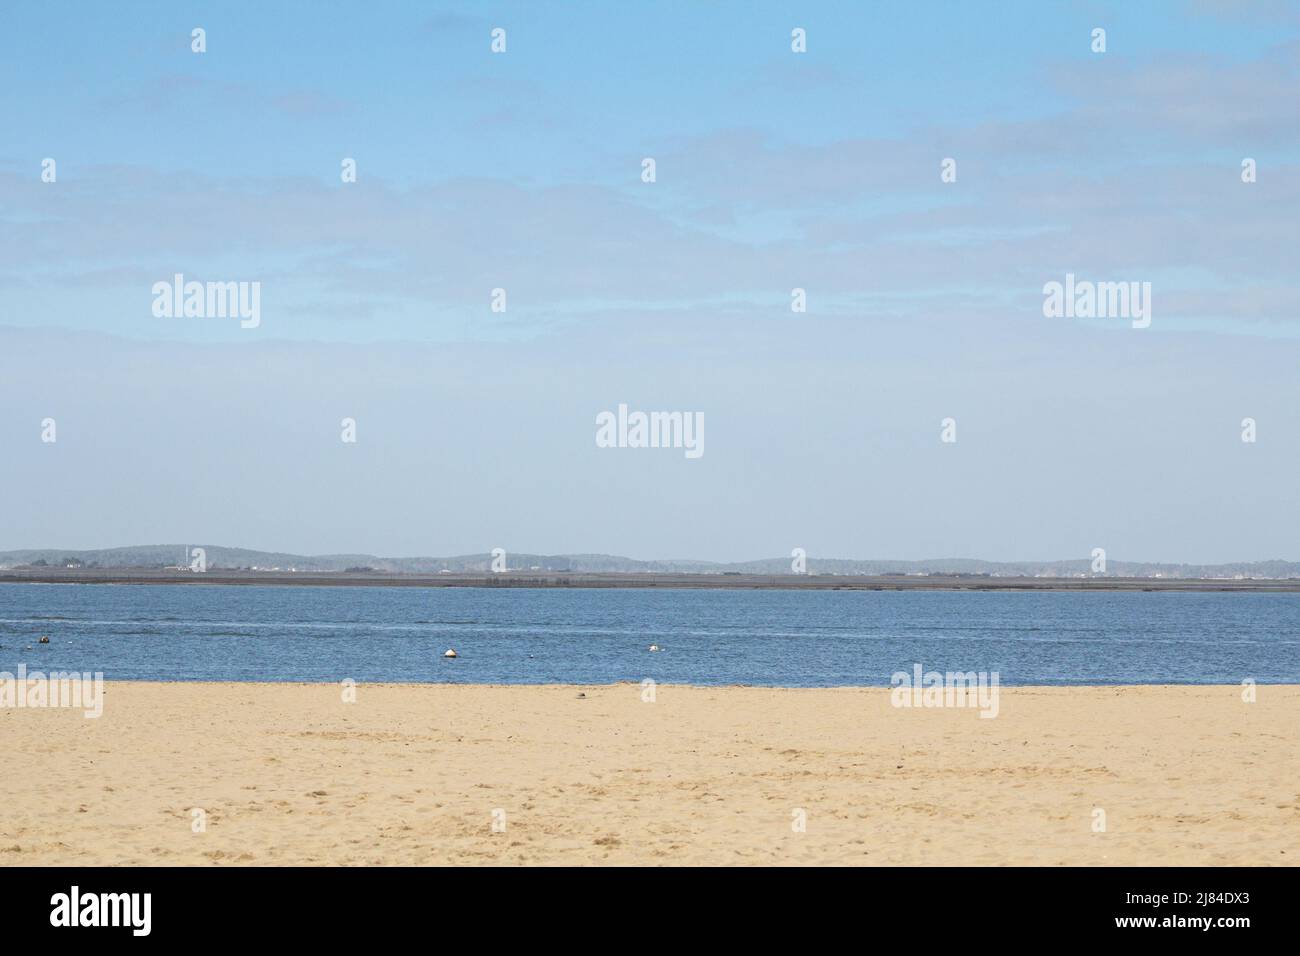 Photo d'une plage sur la baie d'arcachon, ou bassin d'arachon, en France, aquitaine. Le bassin d'Arcachon ou la baie d'Arcachon est une baie de l'Atlan Banque D'Images